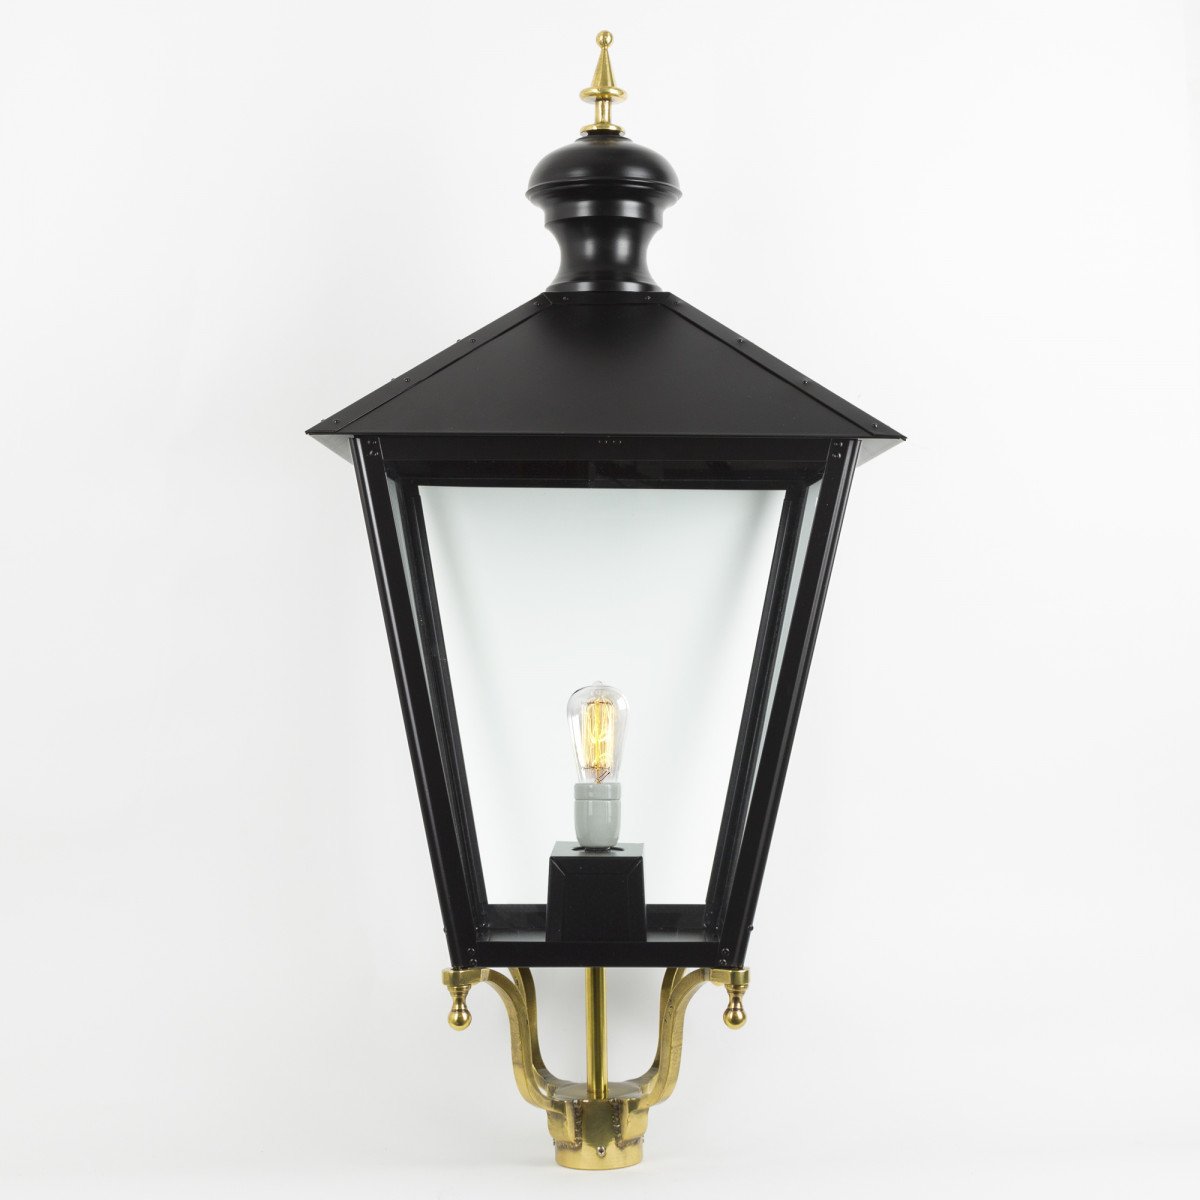 Lanterne seule Purmerend XL noire en bronze - abat-jour, poteaux, supports